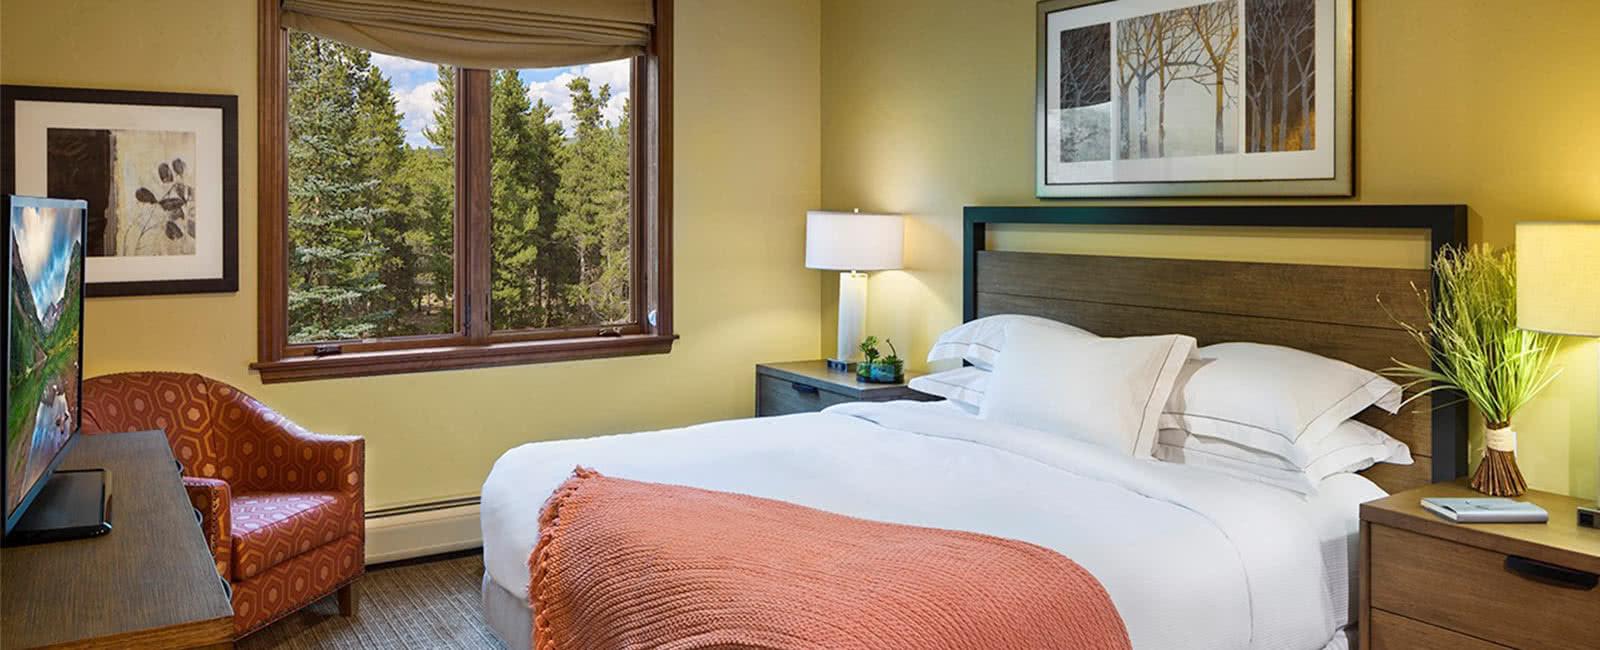 Bedroom at Valdoro Mountain Lodge in Breckenridge, Colorado